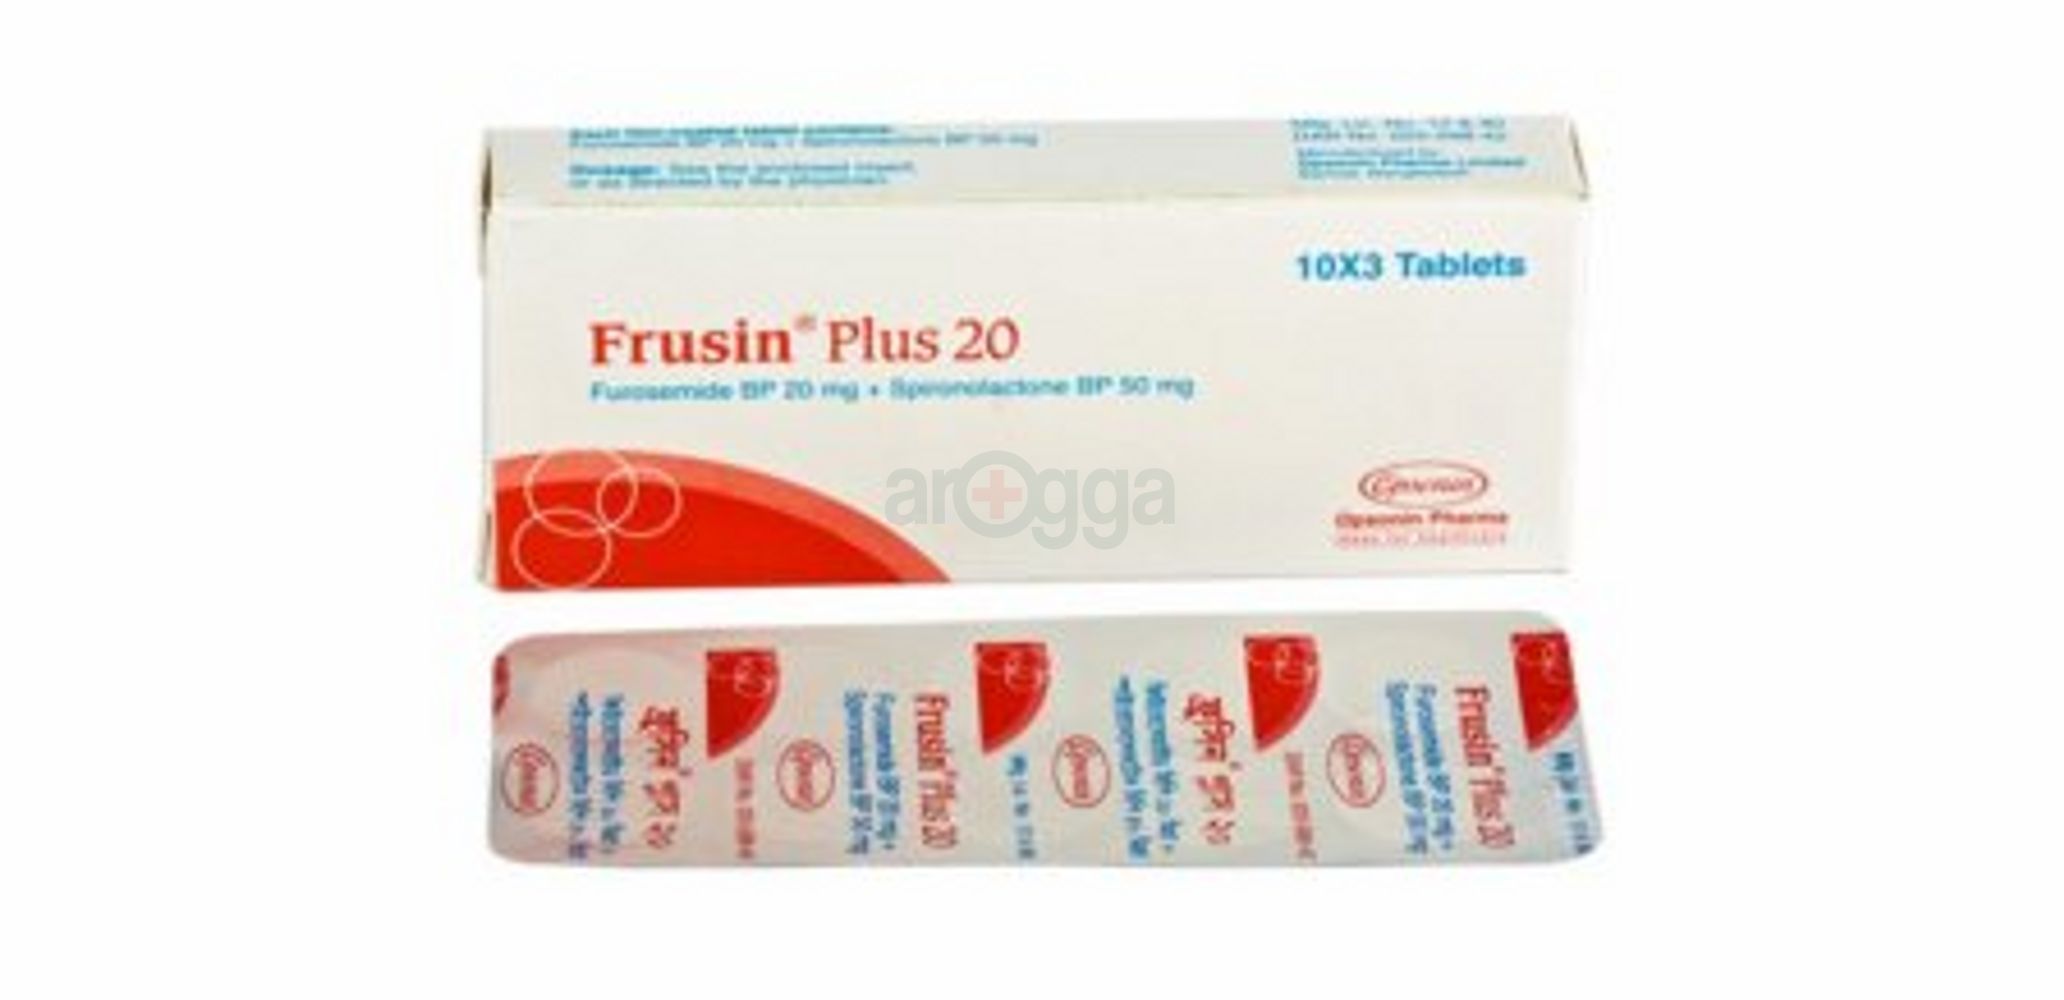 Frusin Plus 20